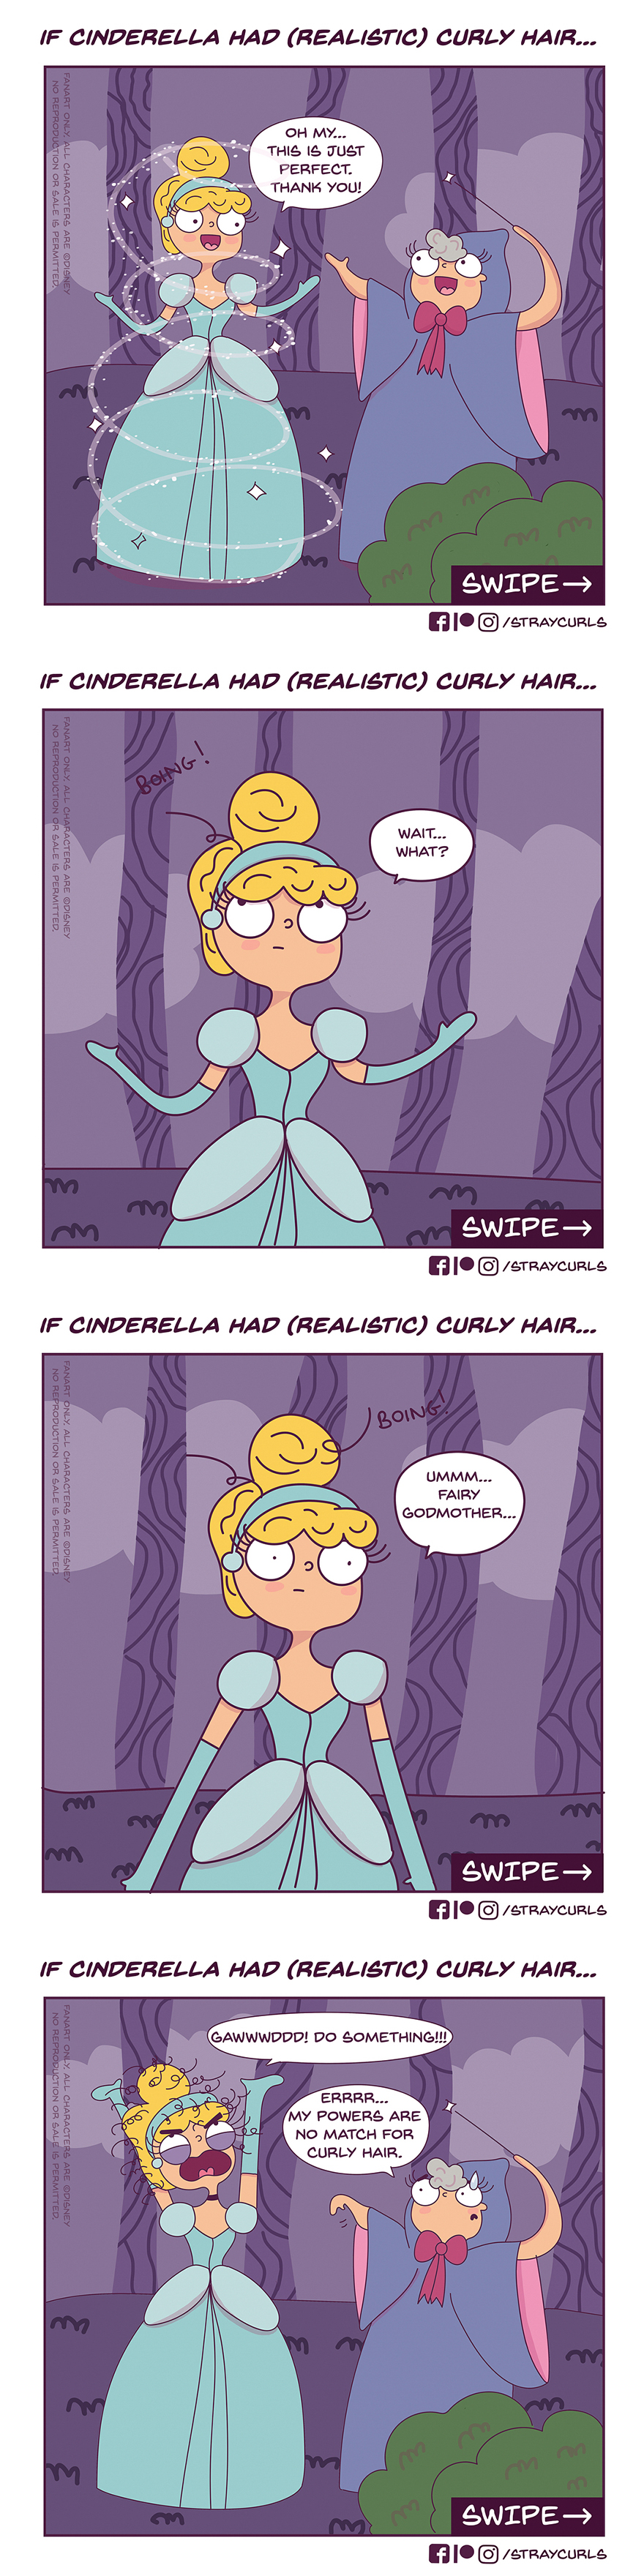 If Cinderella had curly hair...